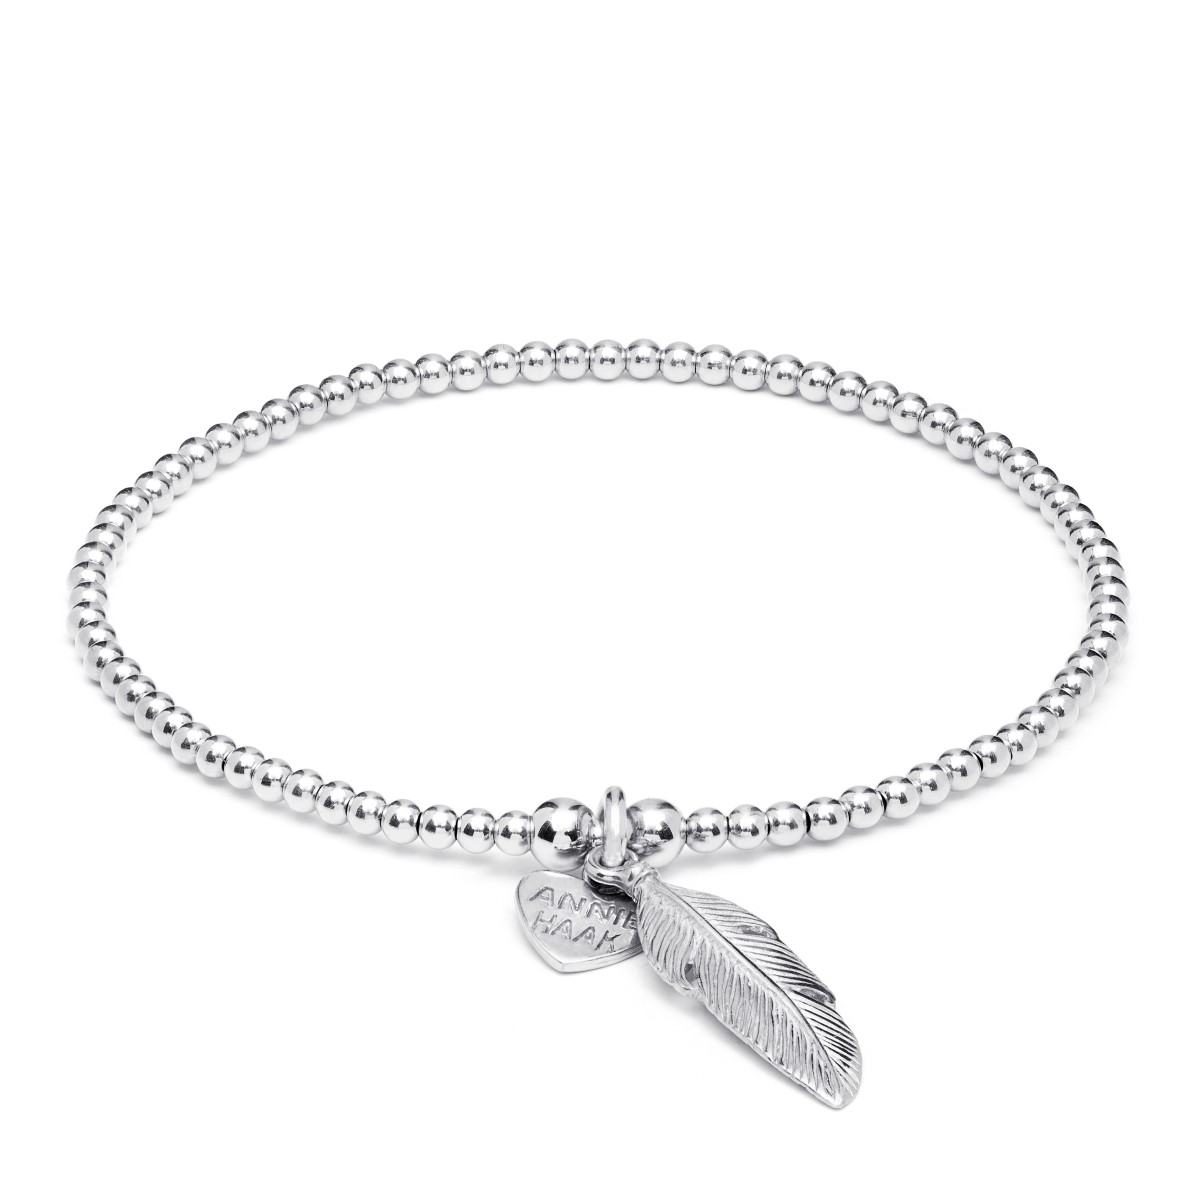 Annie Haak Santeenie Silver Charm Bracelet - Feather